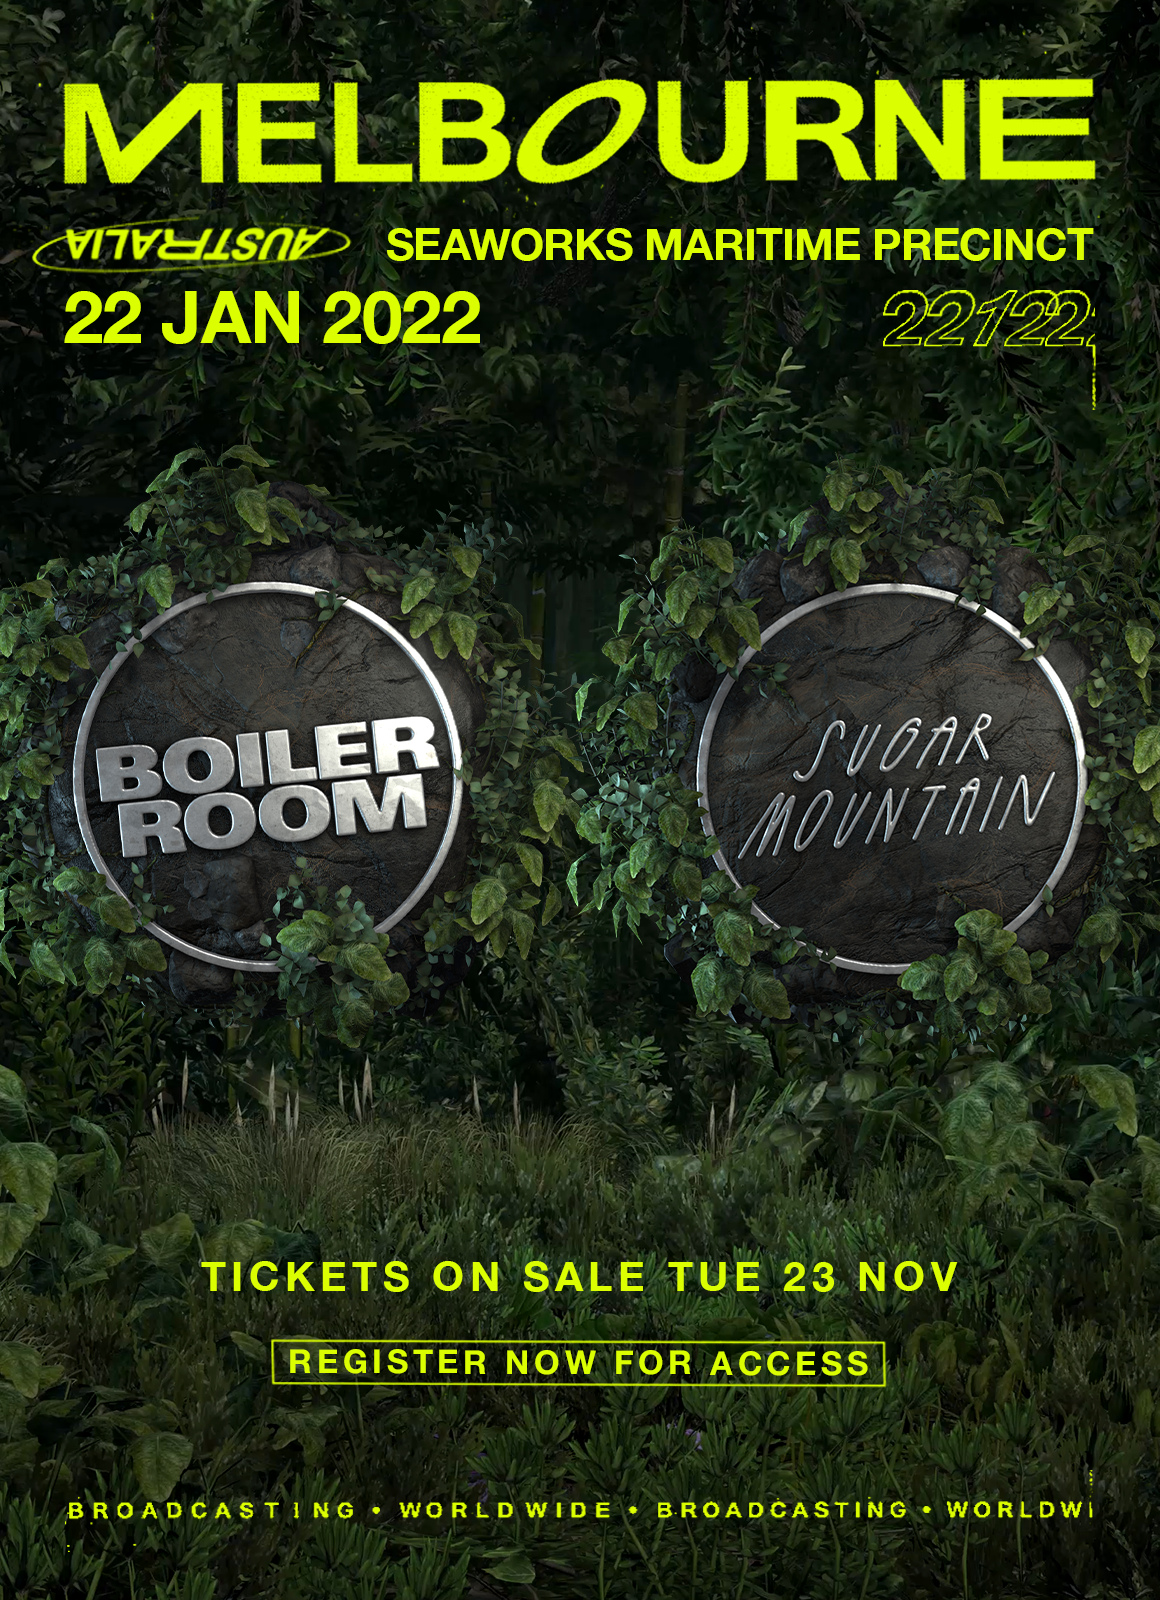 ANNOUNCING: BOILER ROOM X SUGAR MOUNTAIN 2022